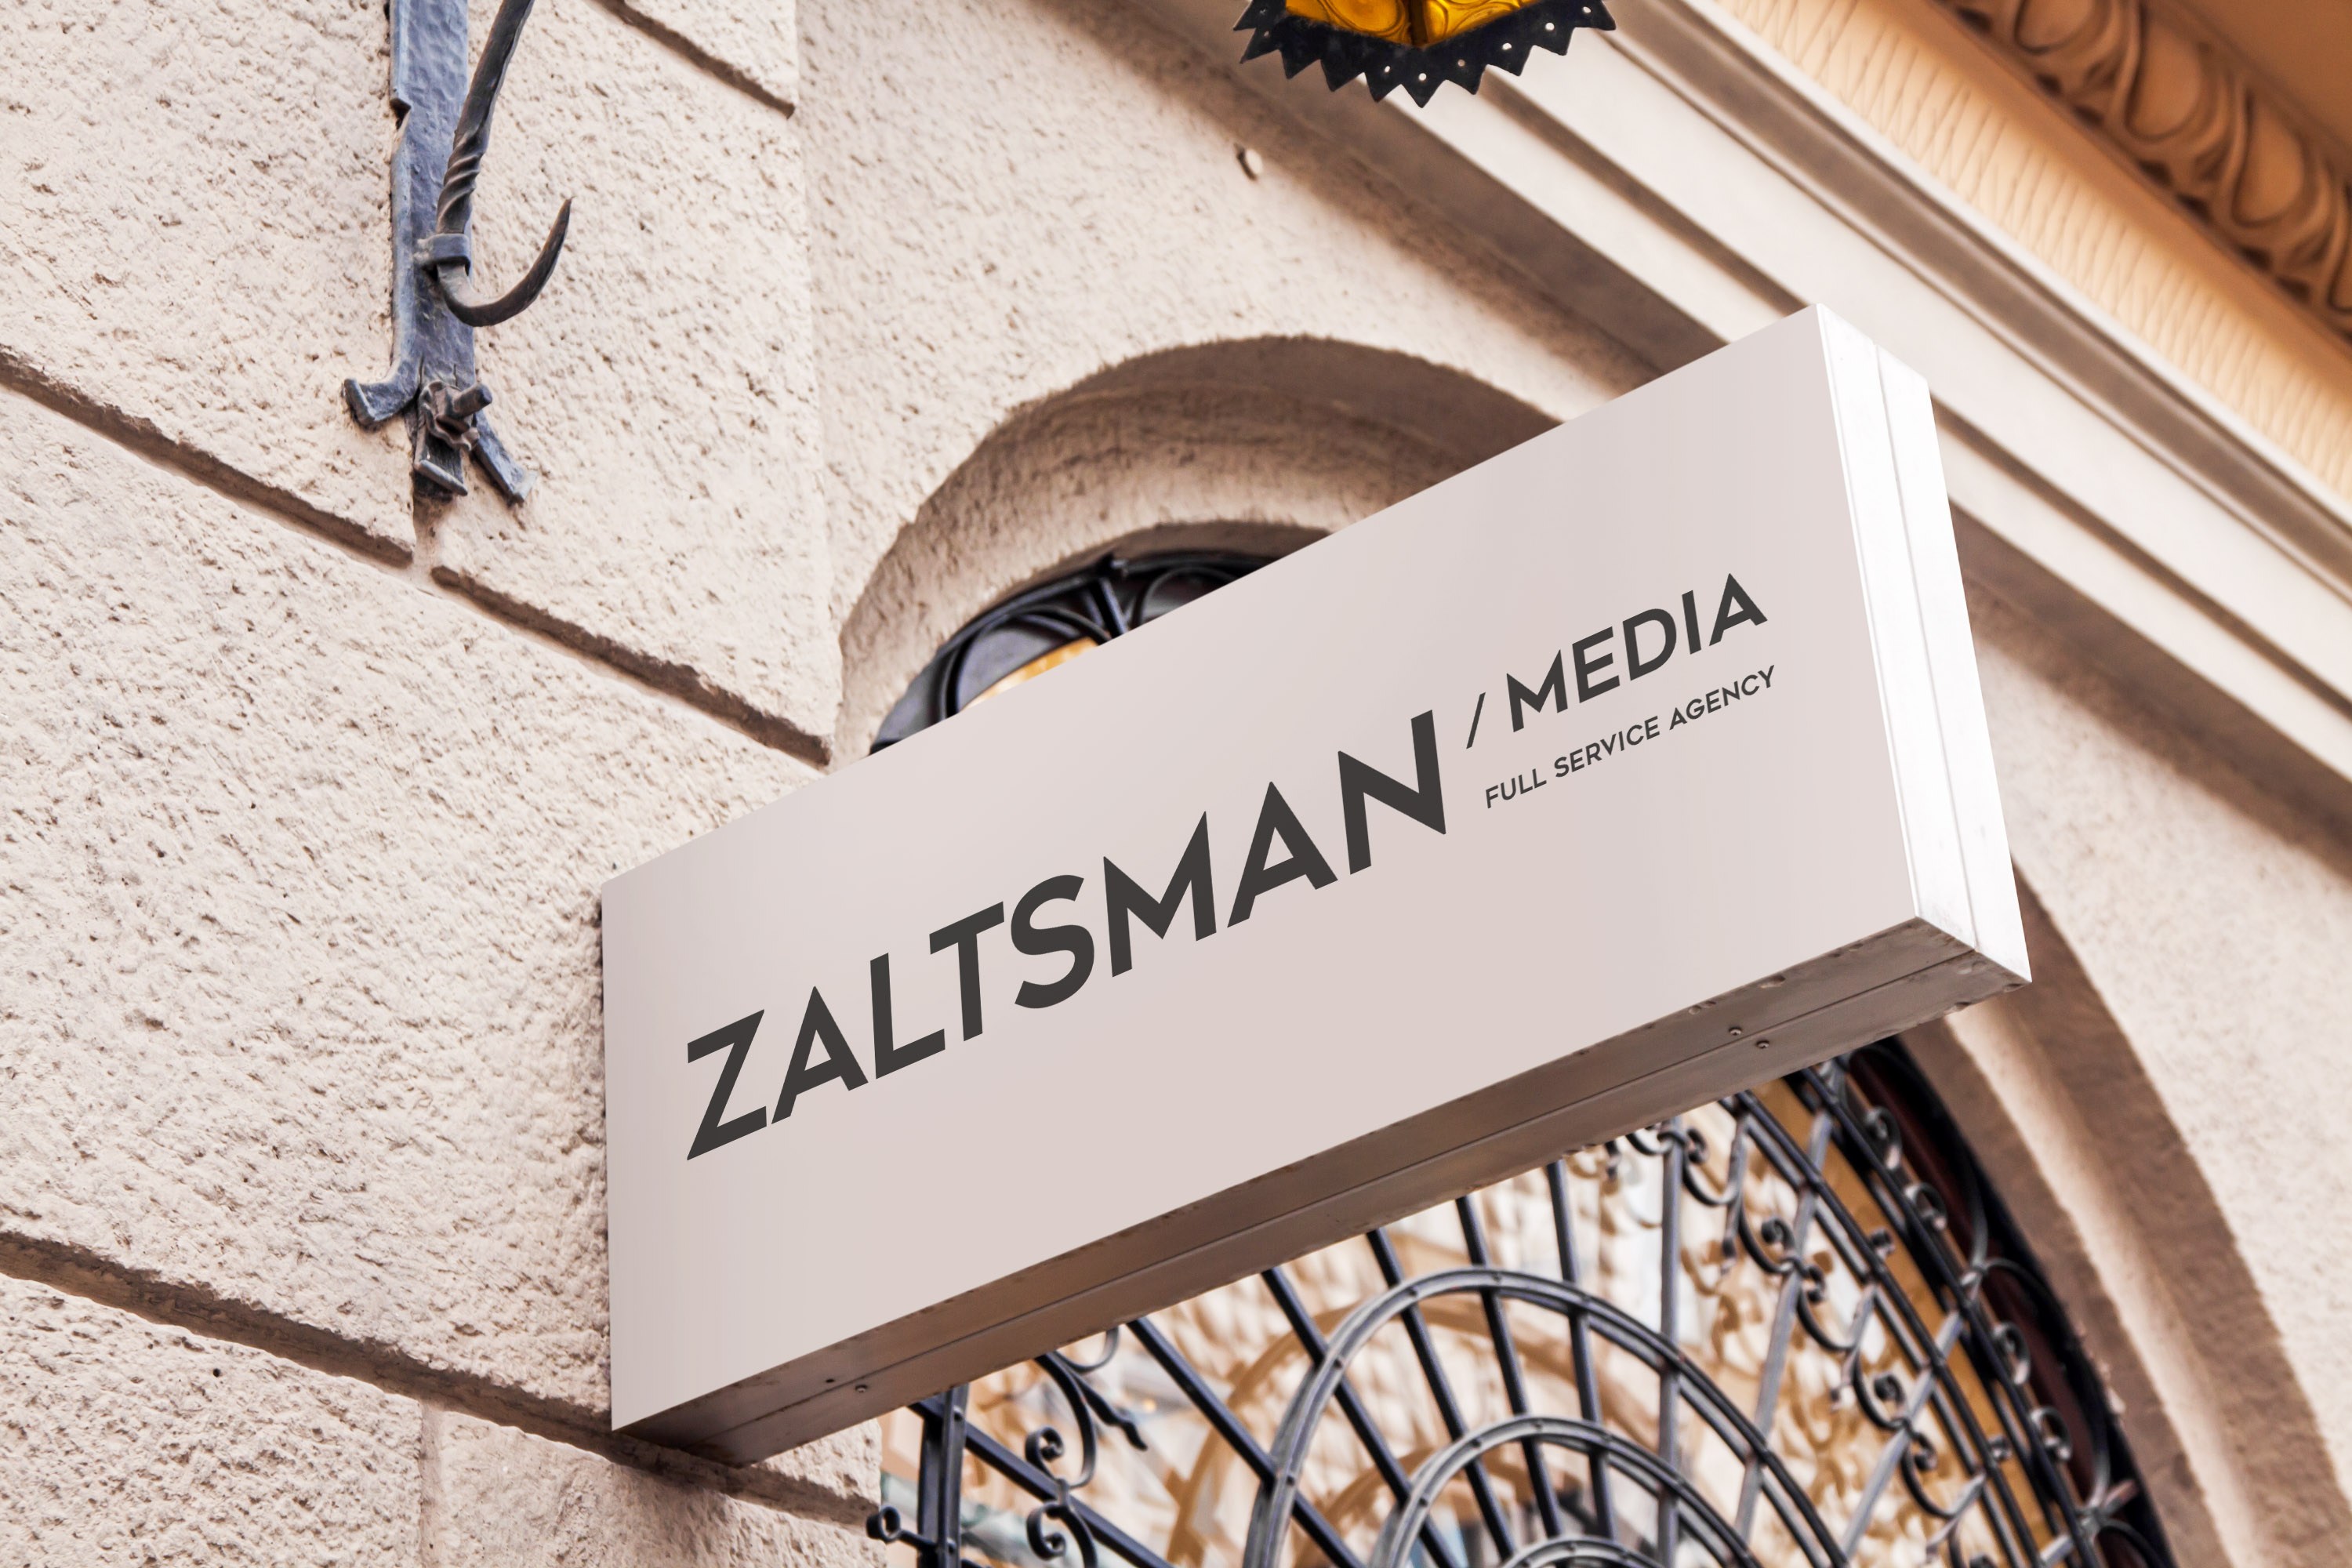 Rebranding para Zaltsman Media